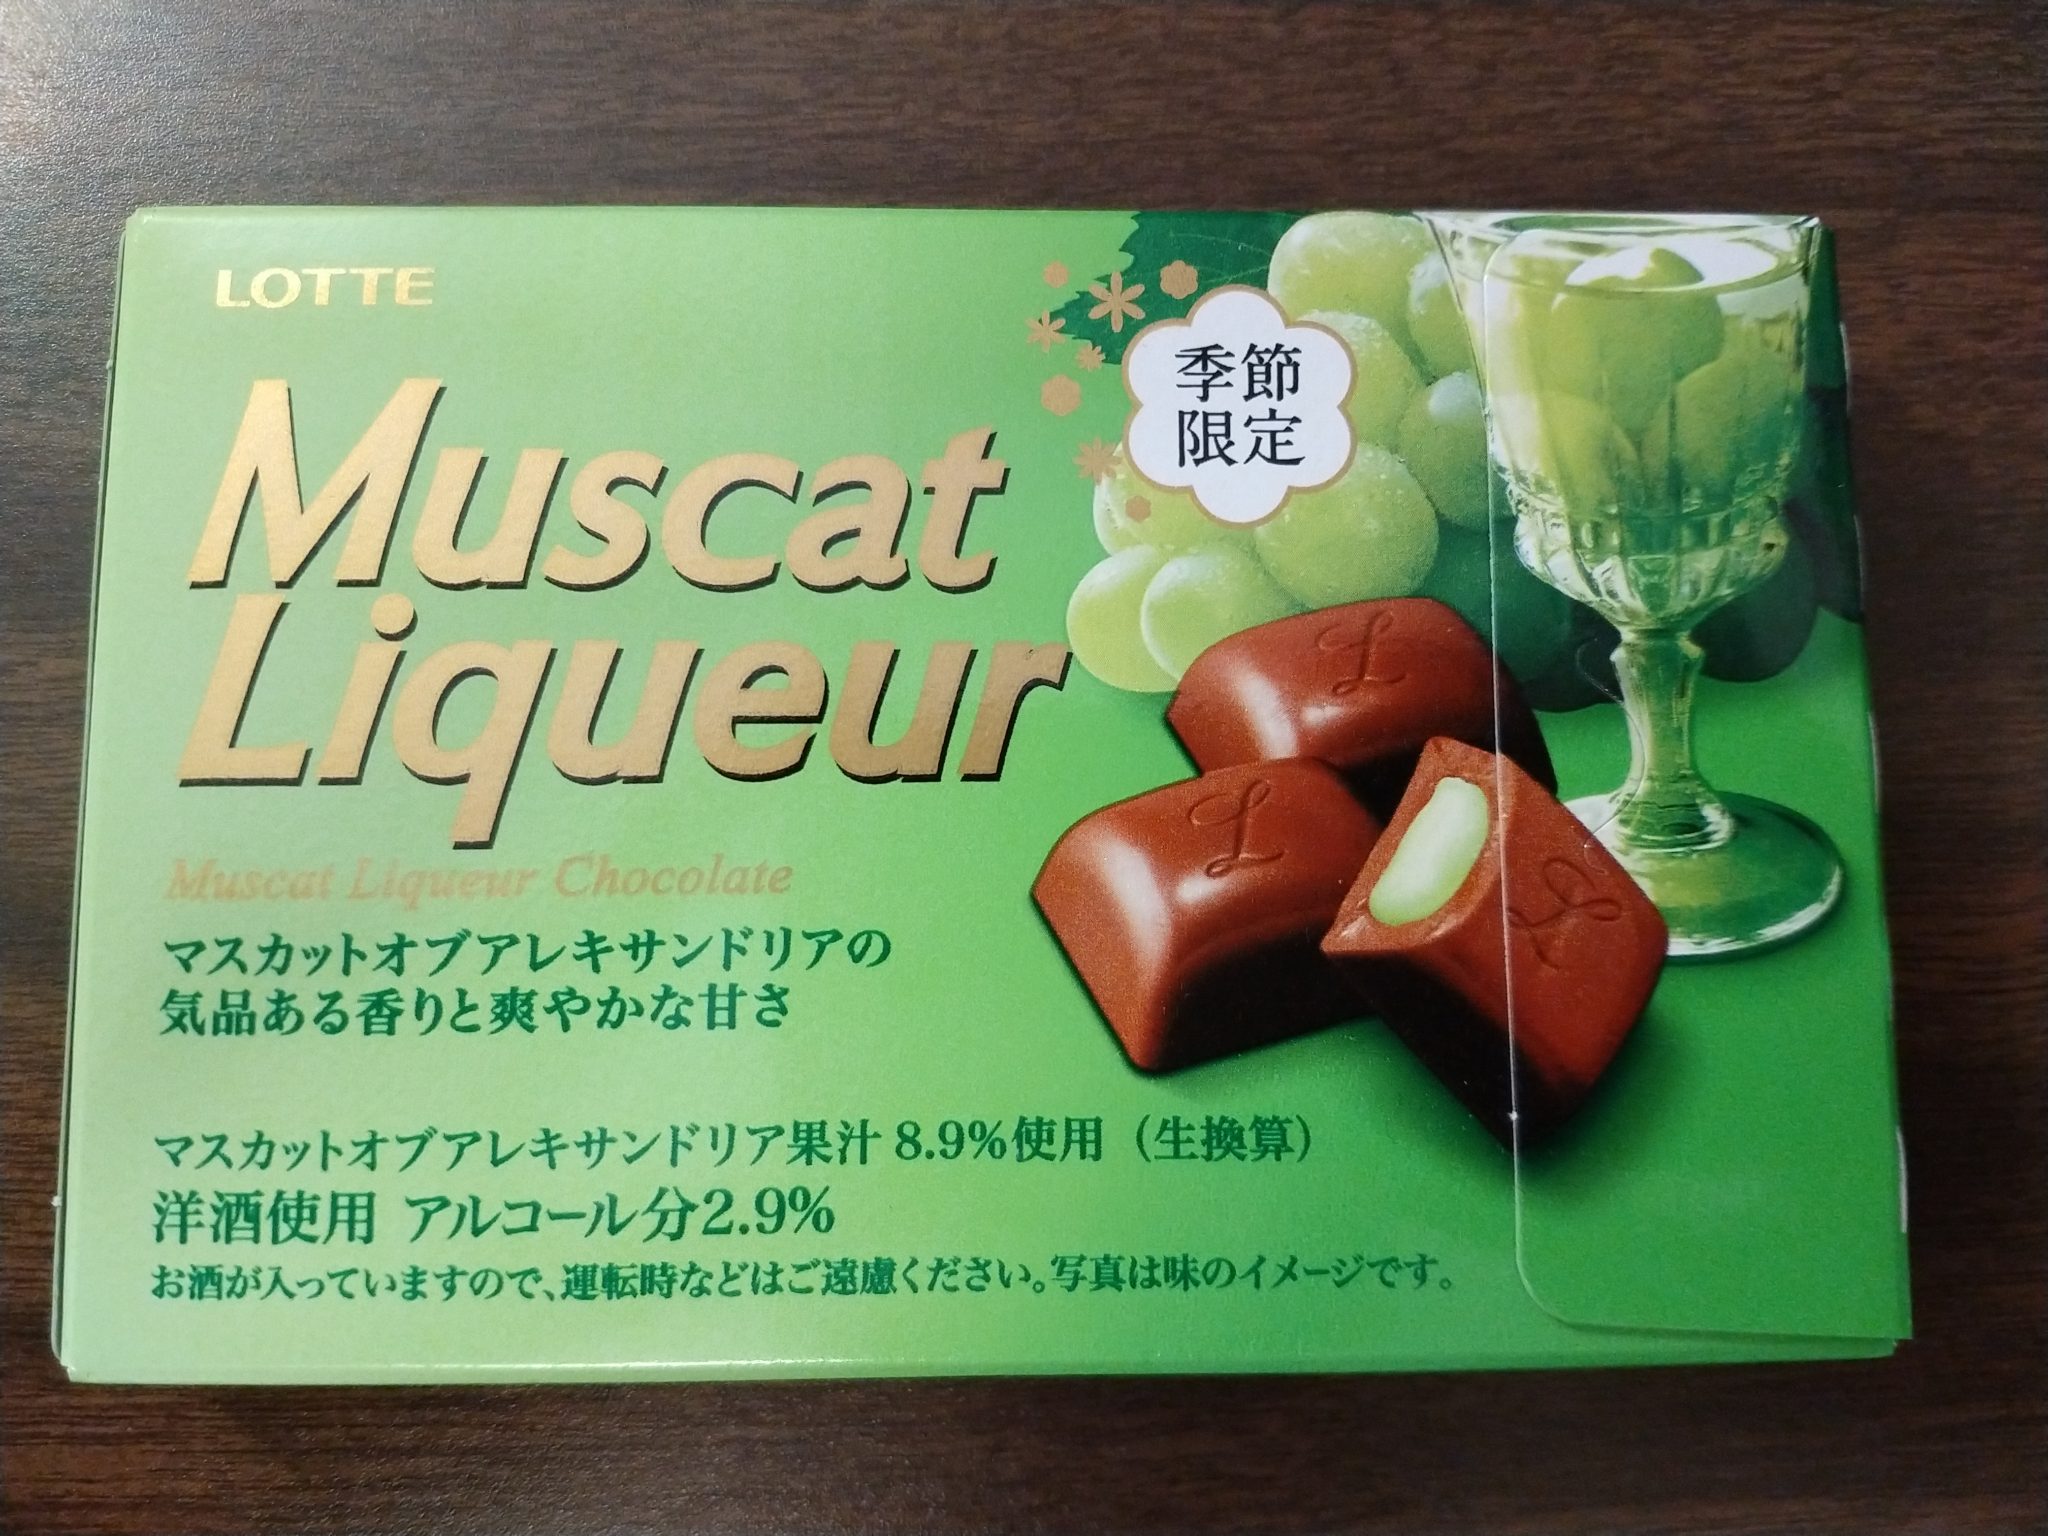 Lotte – Muscat Grape Liqueur Chocolate